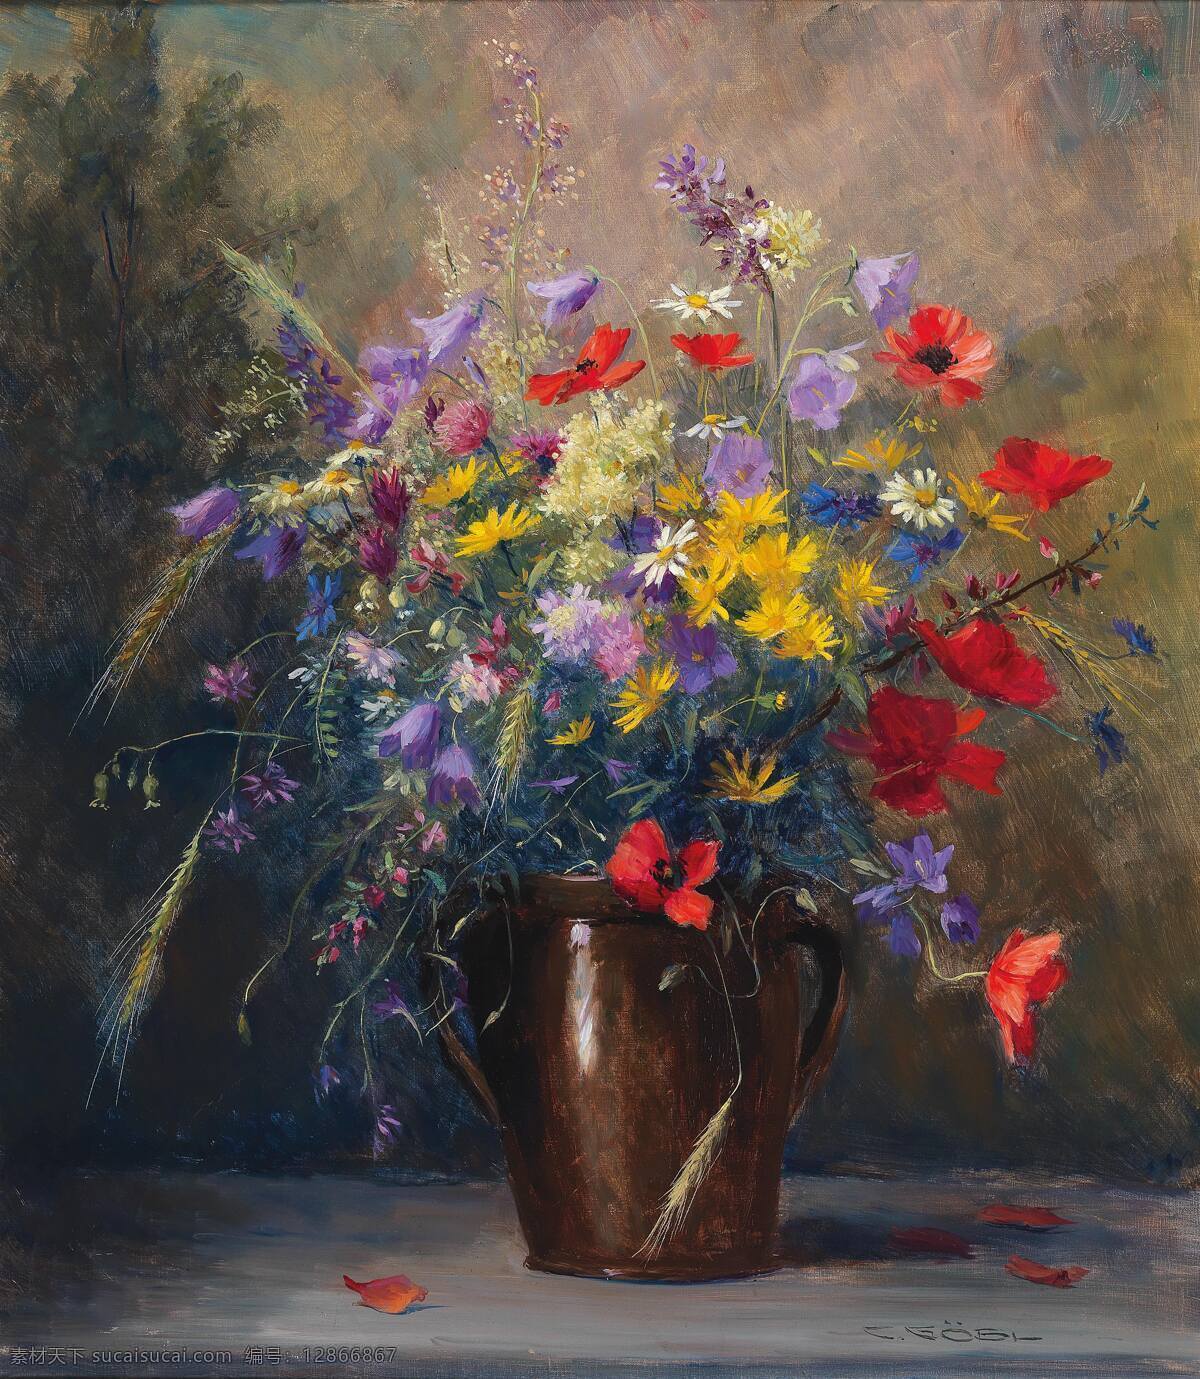 卡米拉 瓦尔 作品 夏花 陶罐 混搭鲜花 静物 19世纪油画 油画 文化艺术 绘画书法